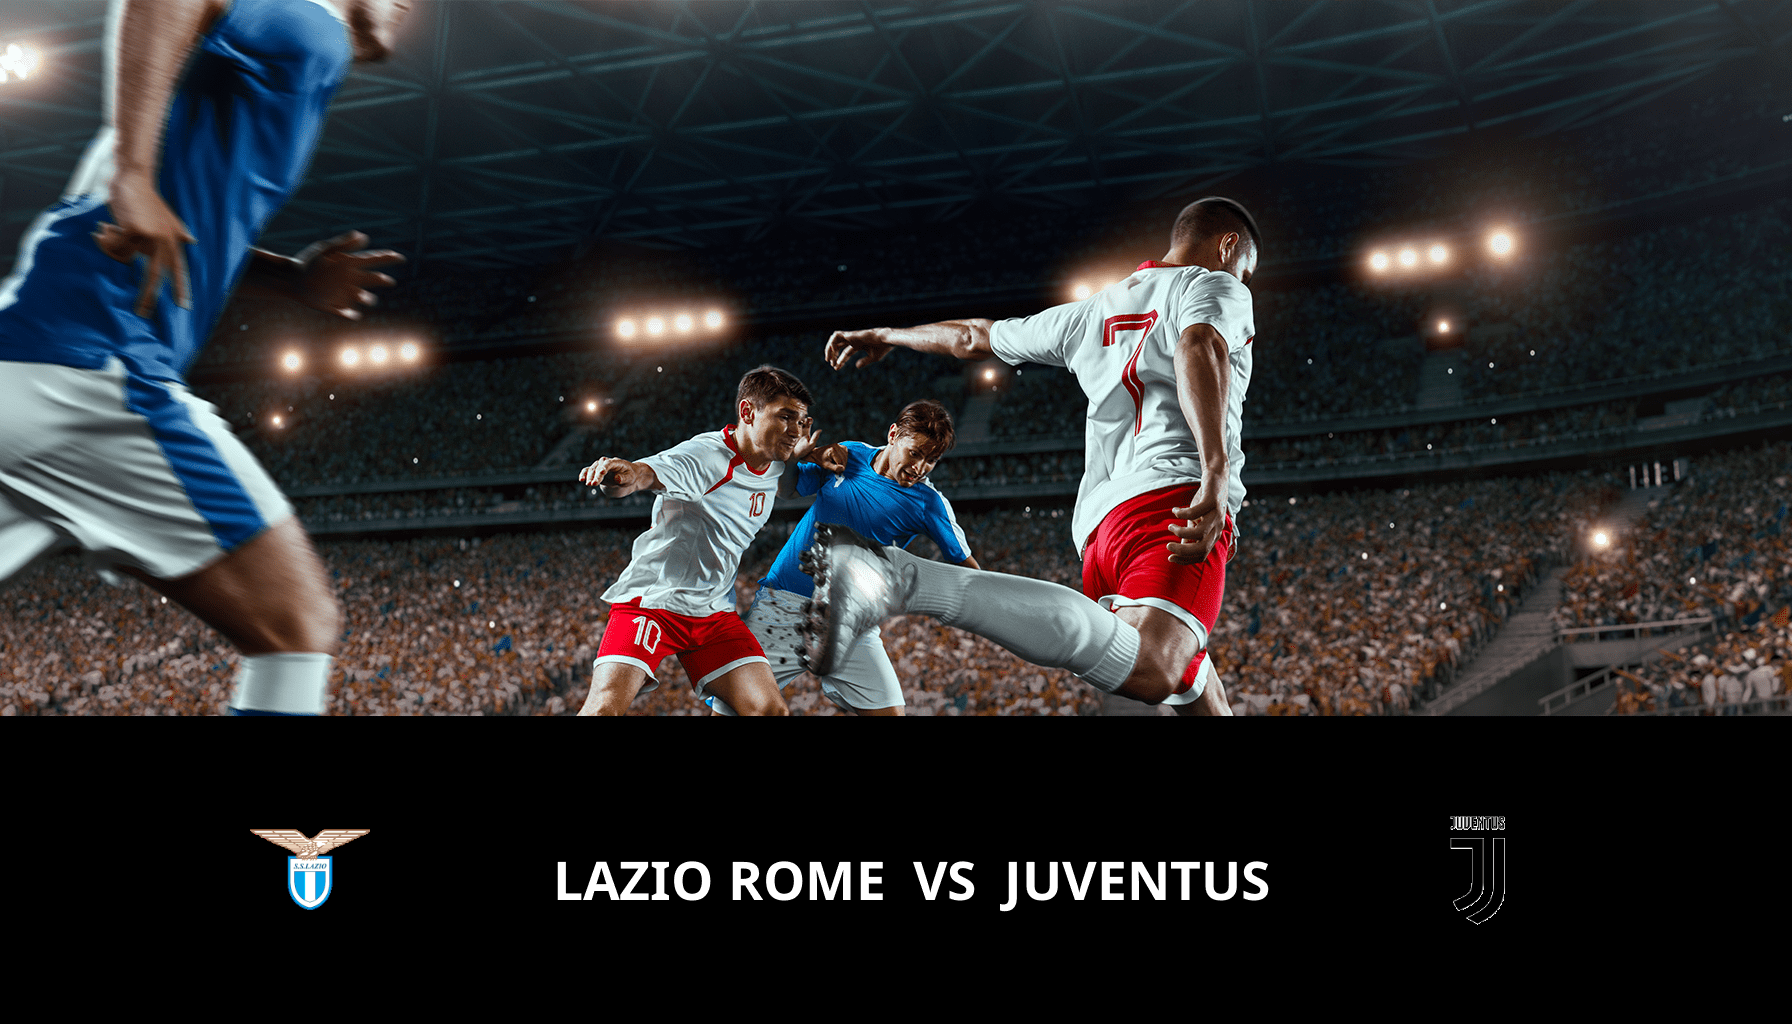 Previsione per Lazio Roma VS Juventus il 23/04/2024 Analysis of the match